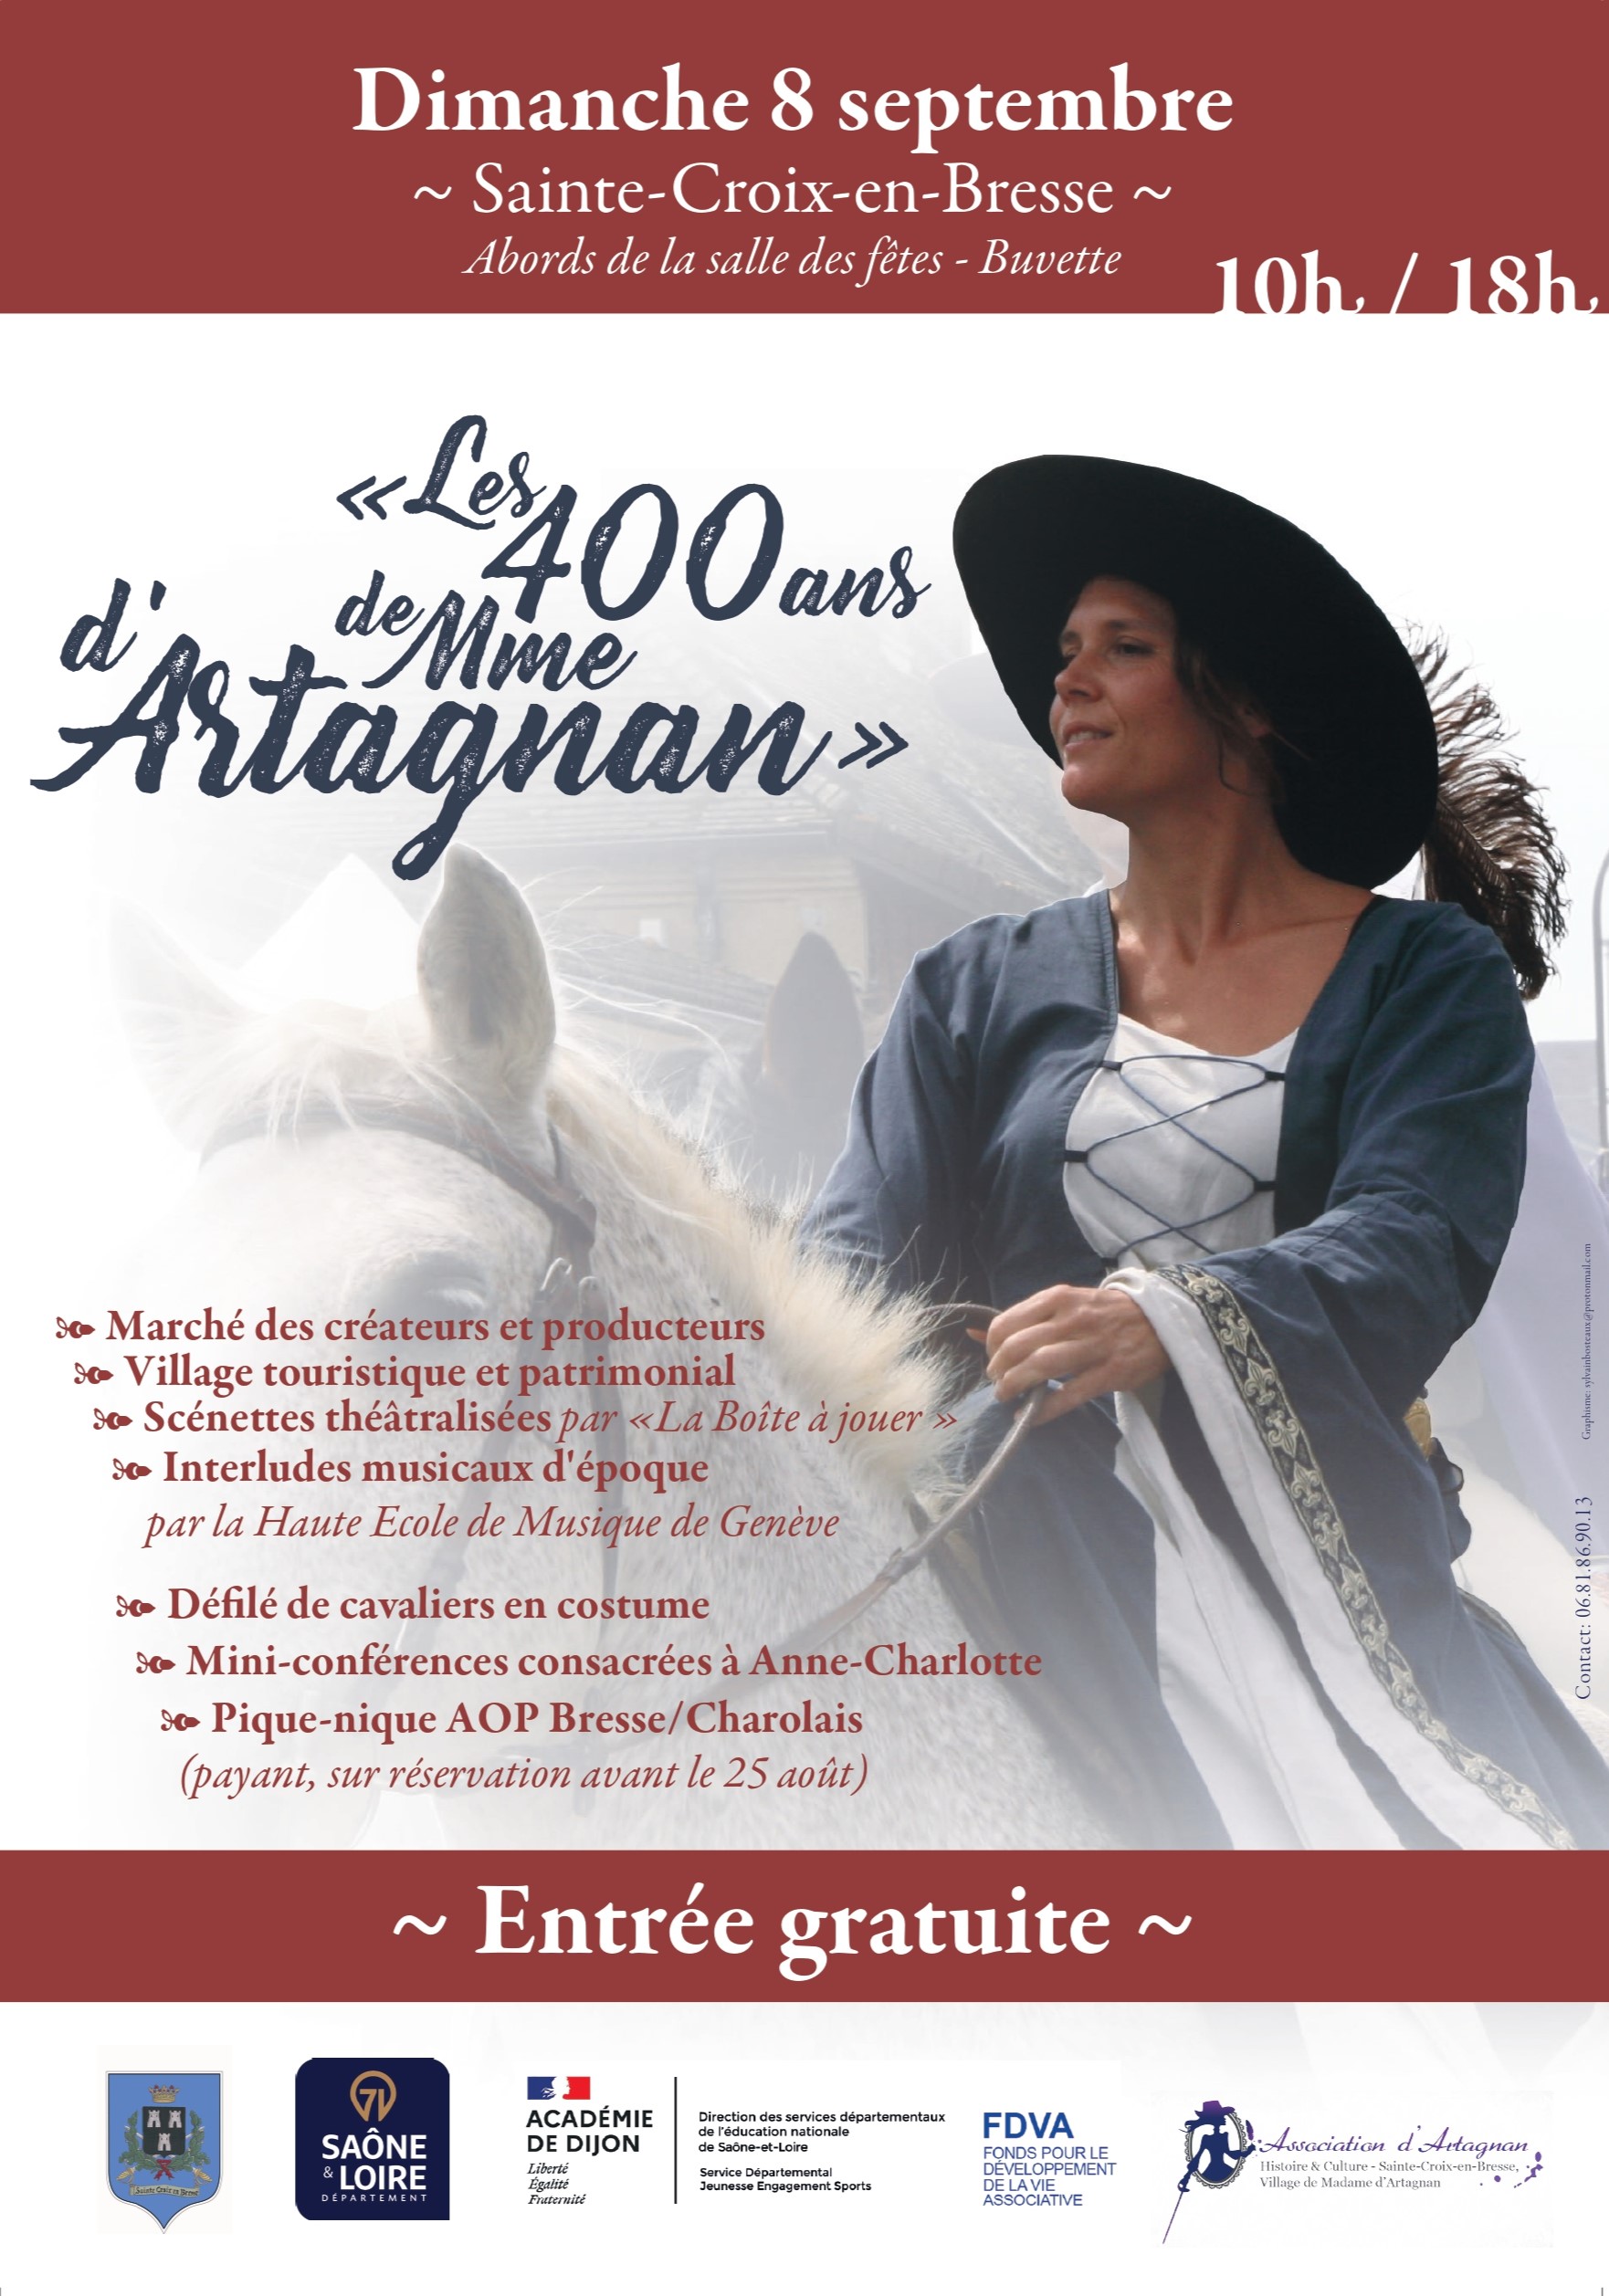 Les 400 ans de Madame d'Artagnan